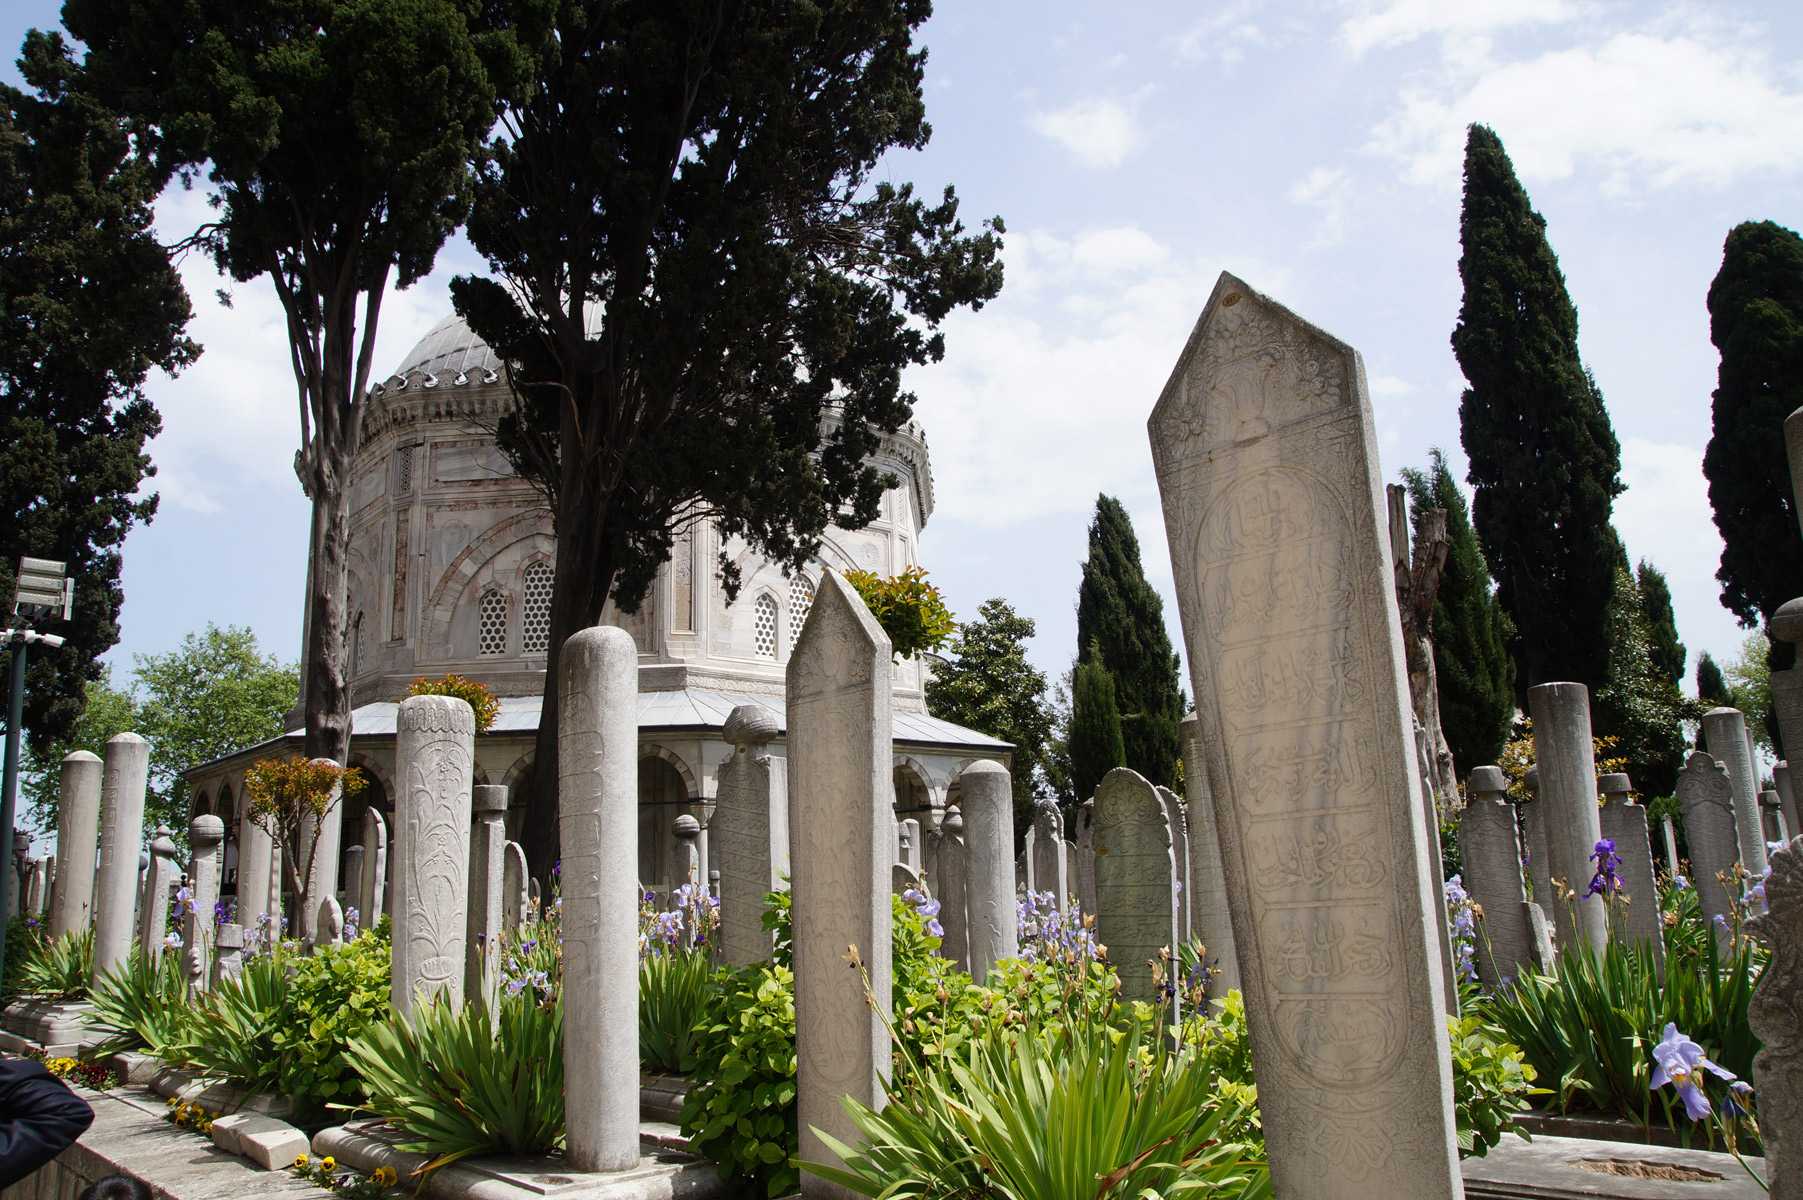 Мавзолей султана Махмуда II - семейная усыпальница османских султанов в Стамбуле, возле которой находится кладбище с могилами известных османских политиков и писателей